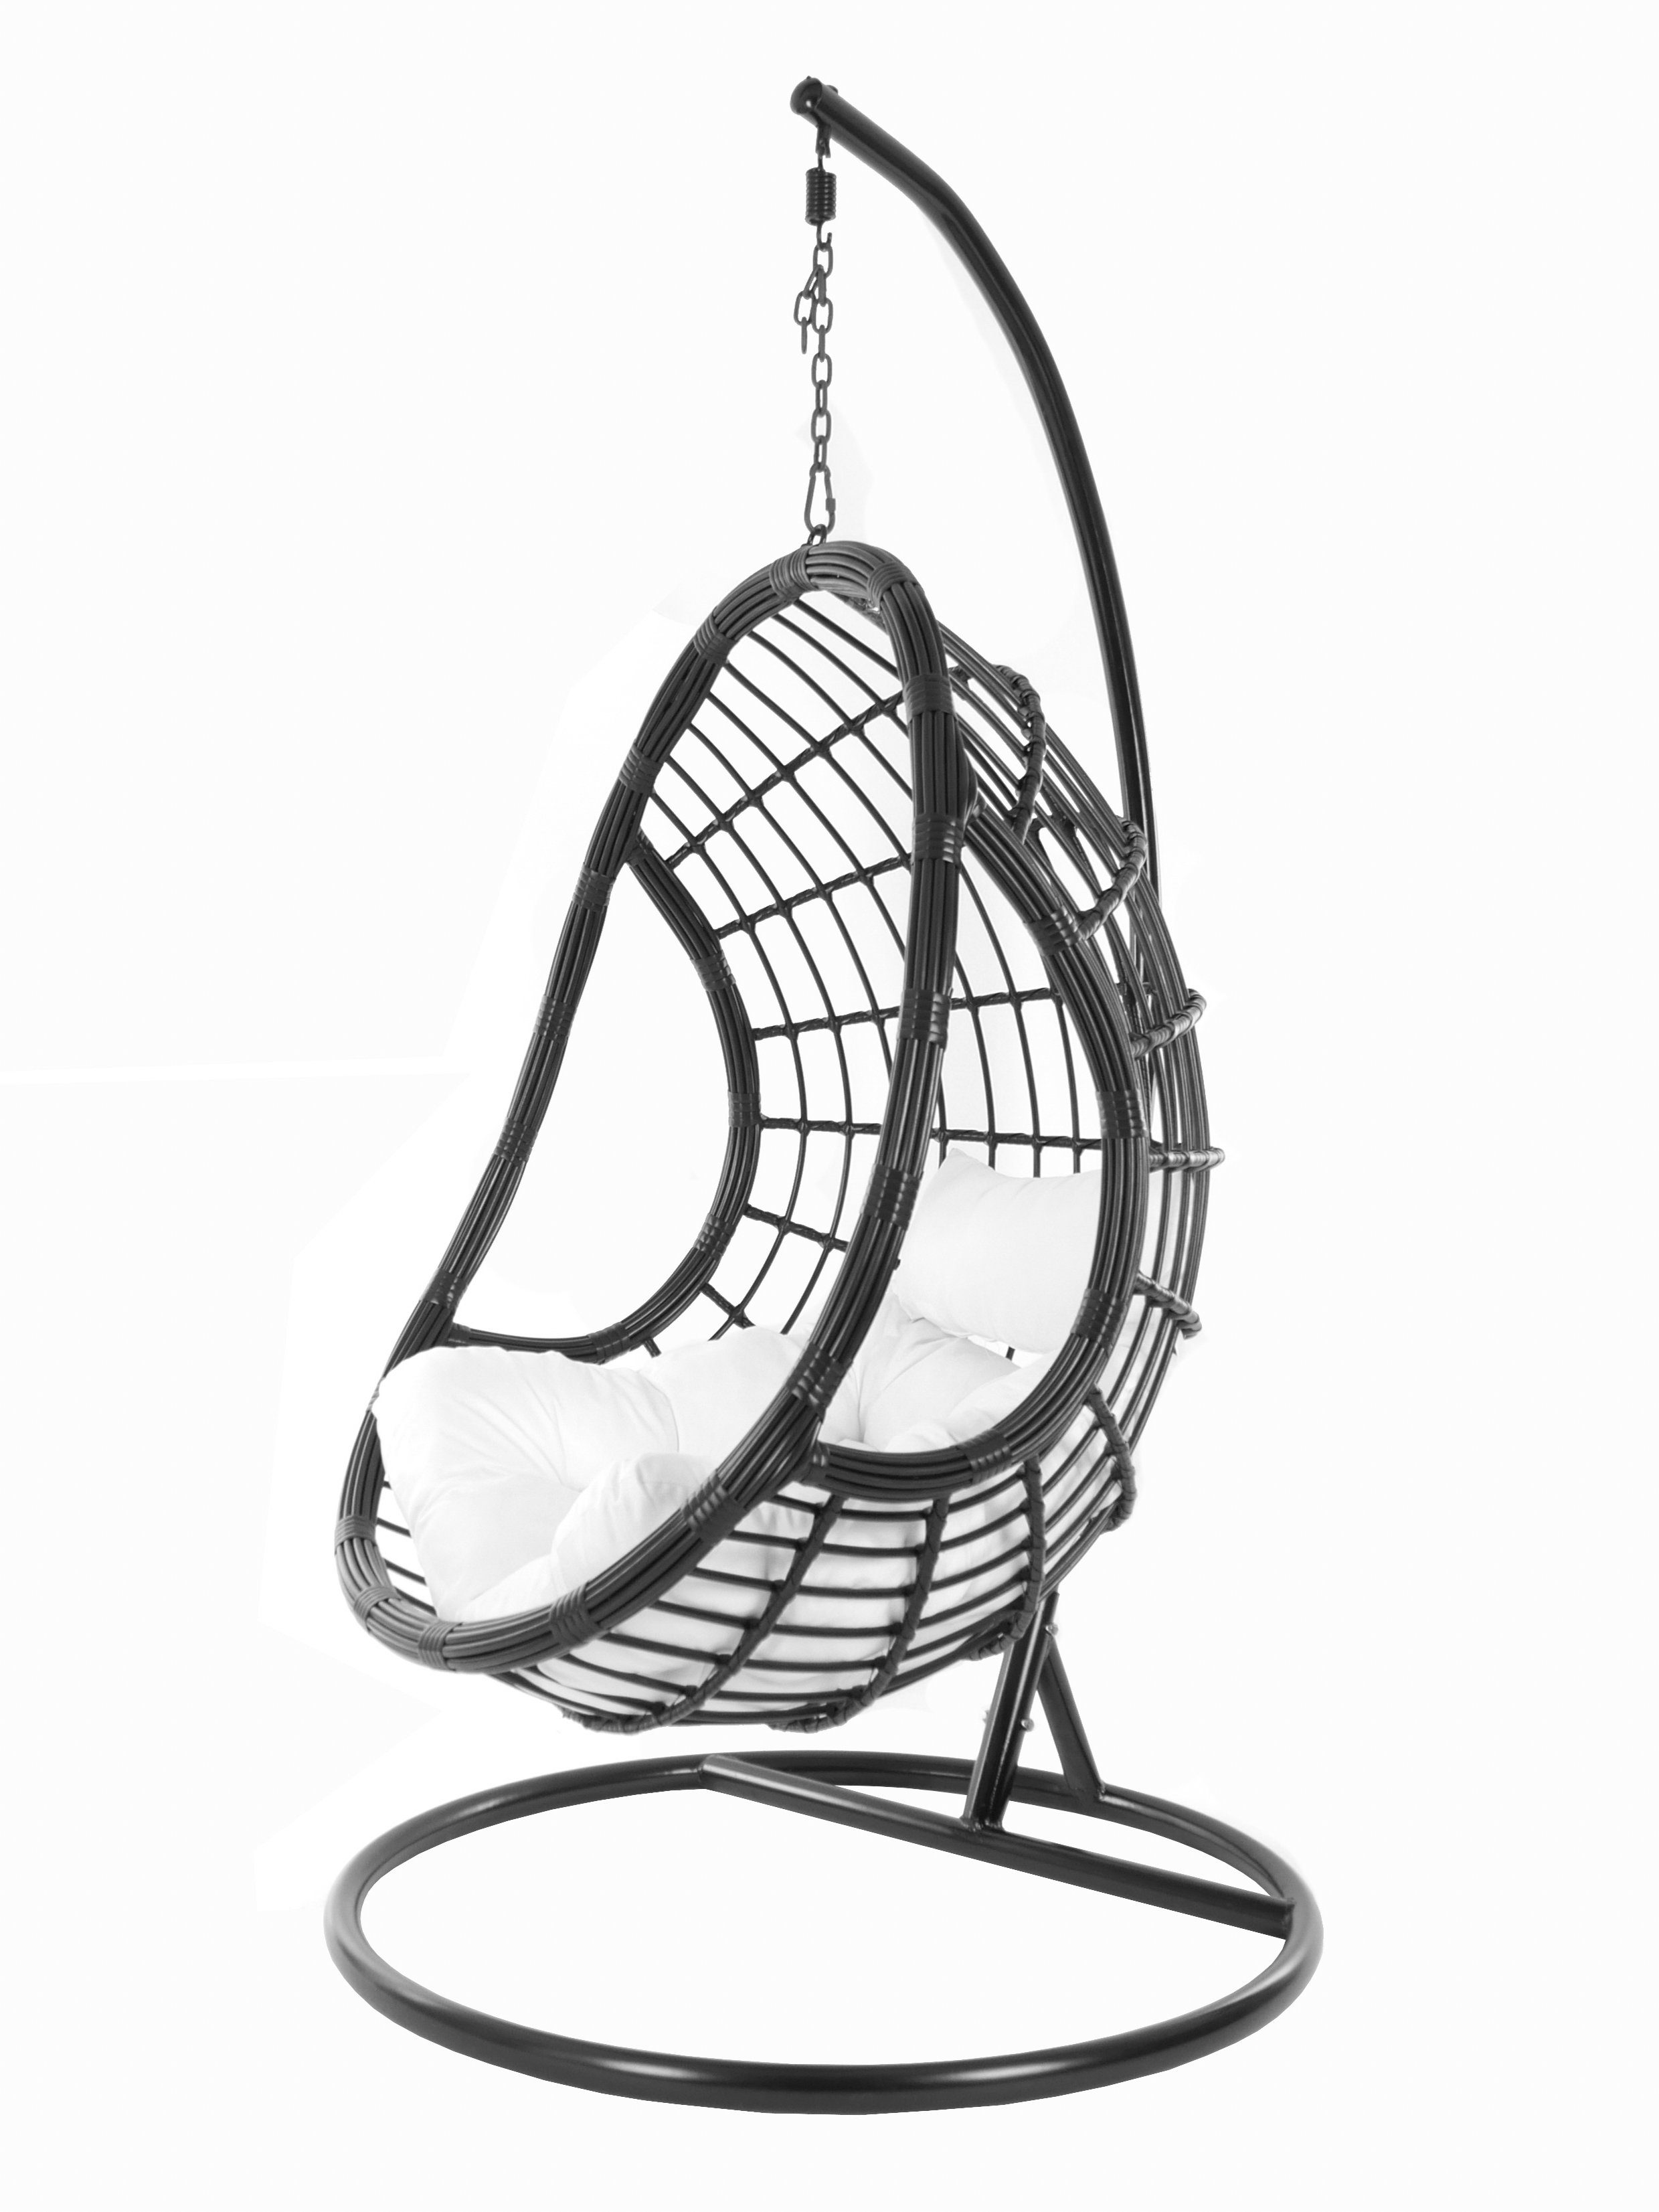 KIDEO Hängesessel PALMANOVA black, und Kissen, edles snow) mit Swing (1000 schwarz, Design Schwebesessel, Loungemöbel, Hängesessel Gestell Chair, weiß